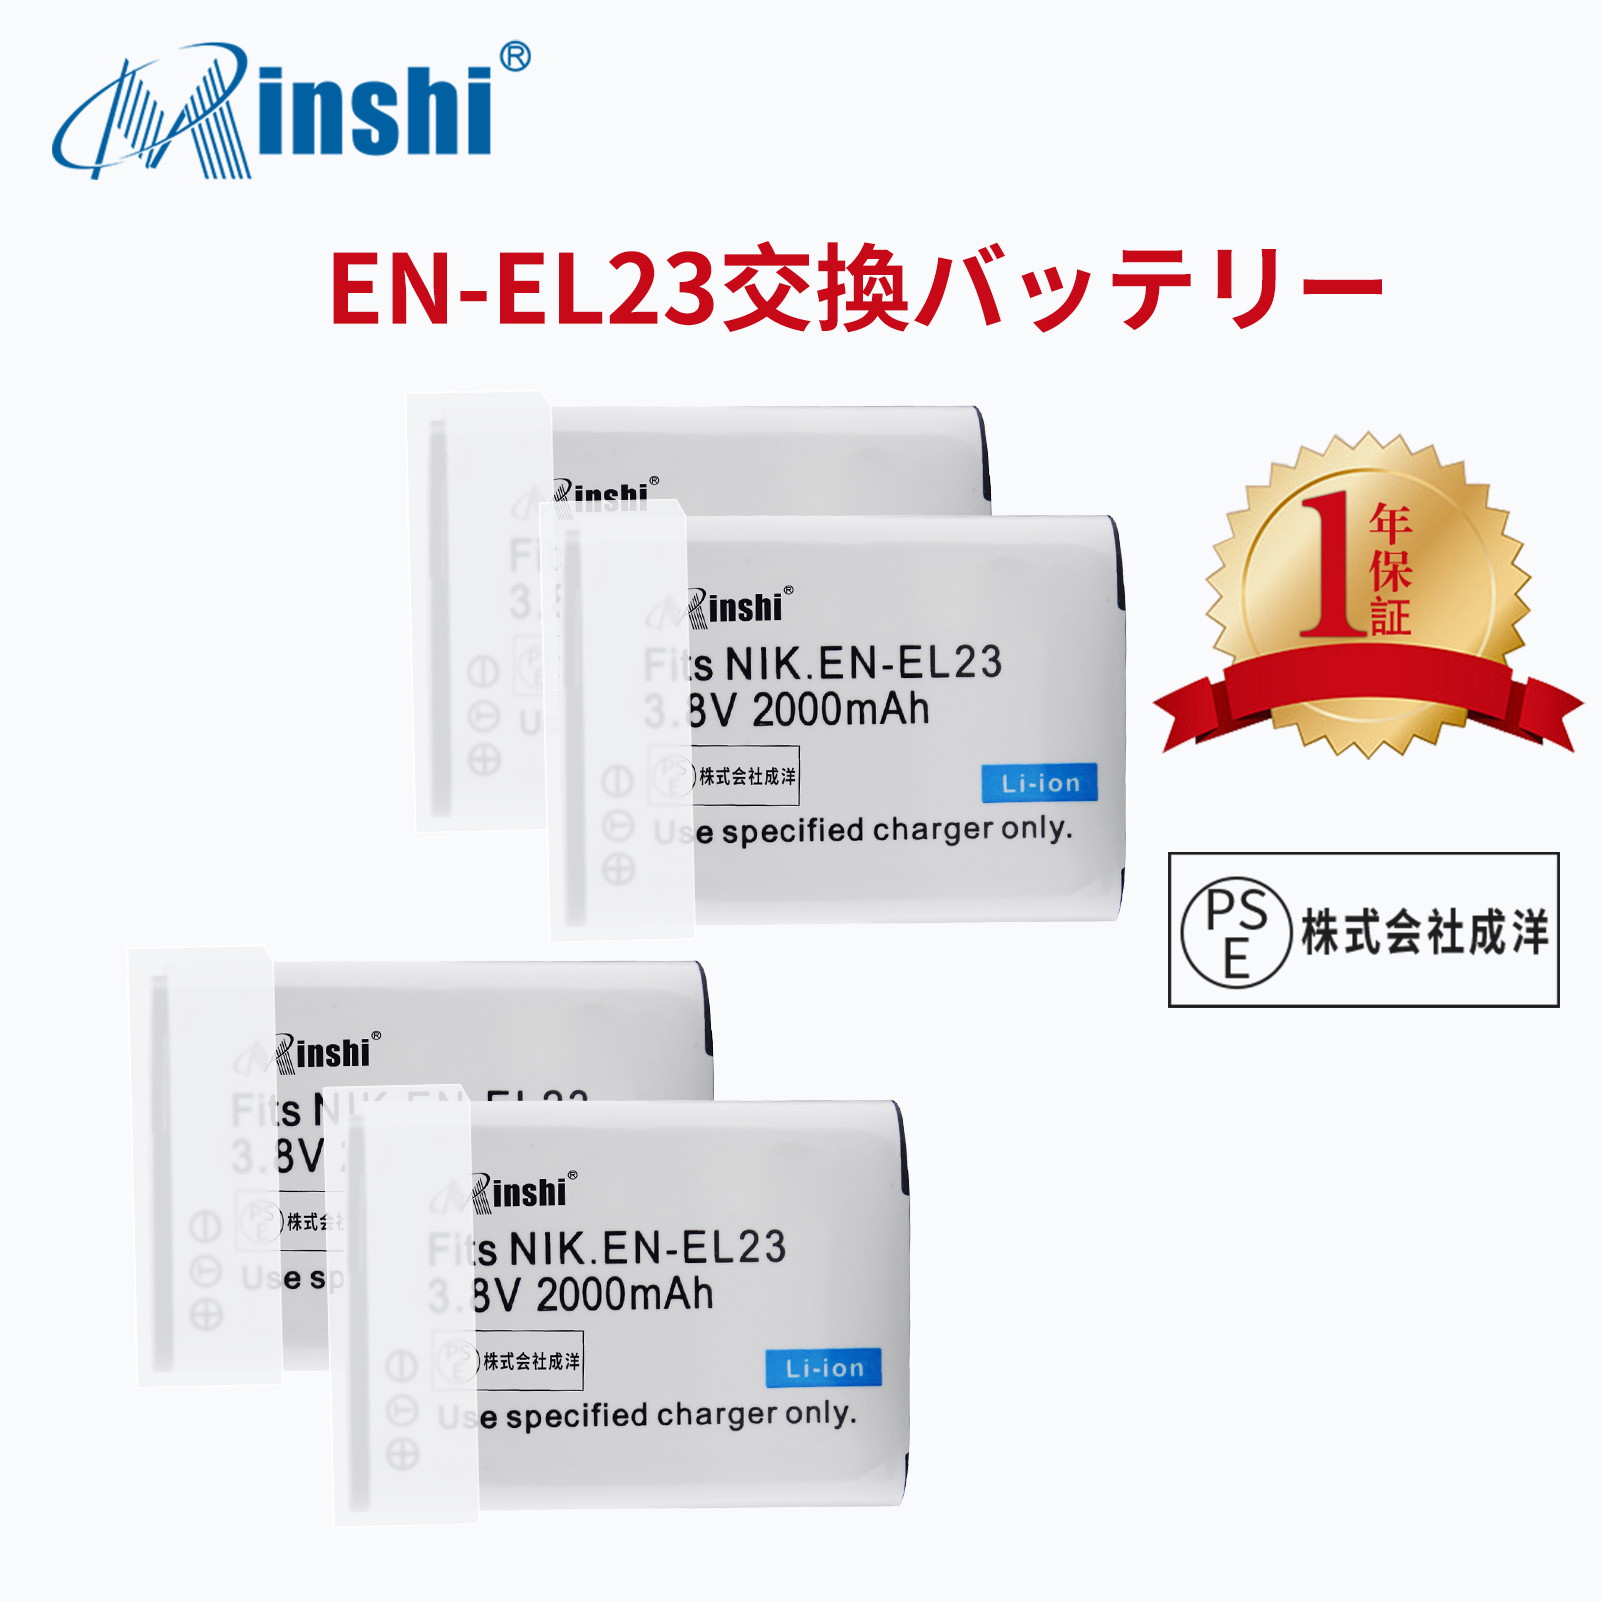 【4個セット】 minshi NIKON B700 対応  互換バッテリー 2000mAh PSE認定済 高品質 EN-EL23 交換用バッテリー